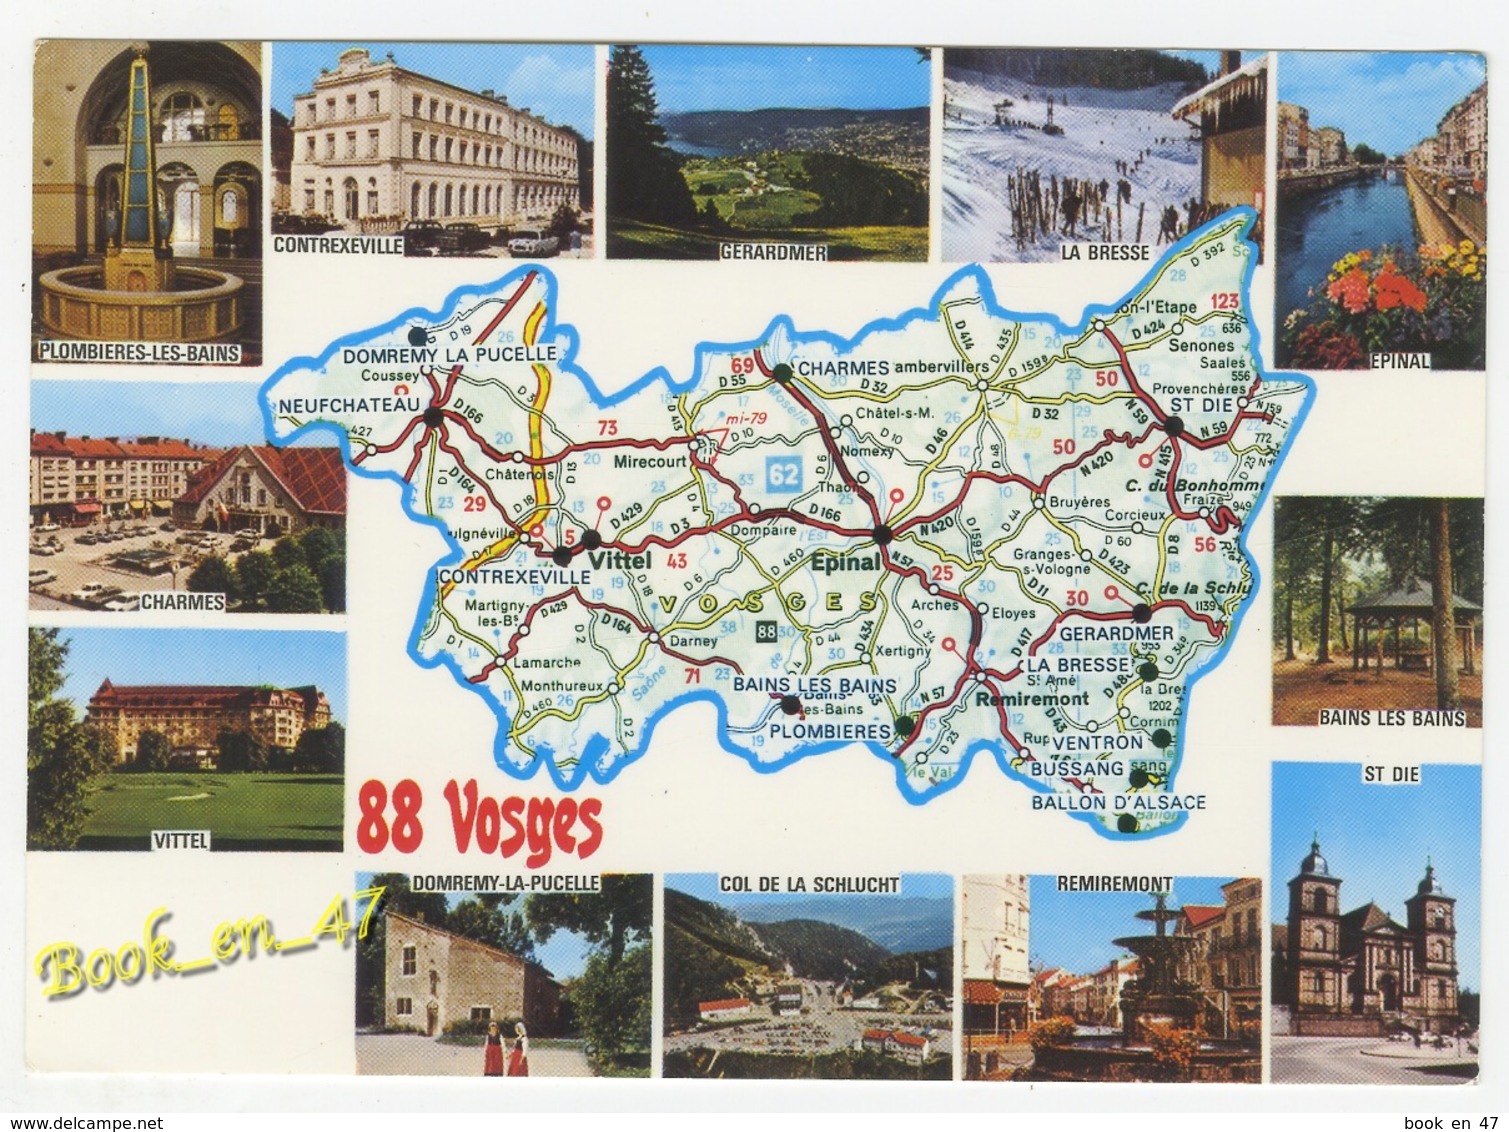 {79774} 88 Vosges , Carte Et Multivues ; Epinal , Contrexeville , Charmes , Vittel , Saint Dié , Gérardmer , Remiremont - Cartes Géographiques